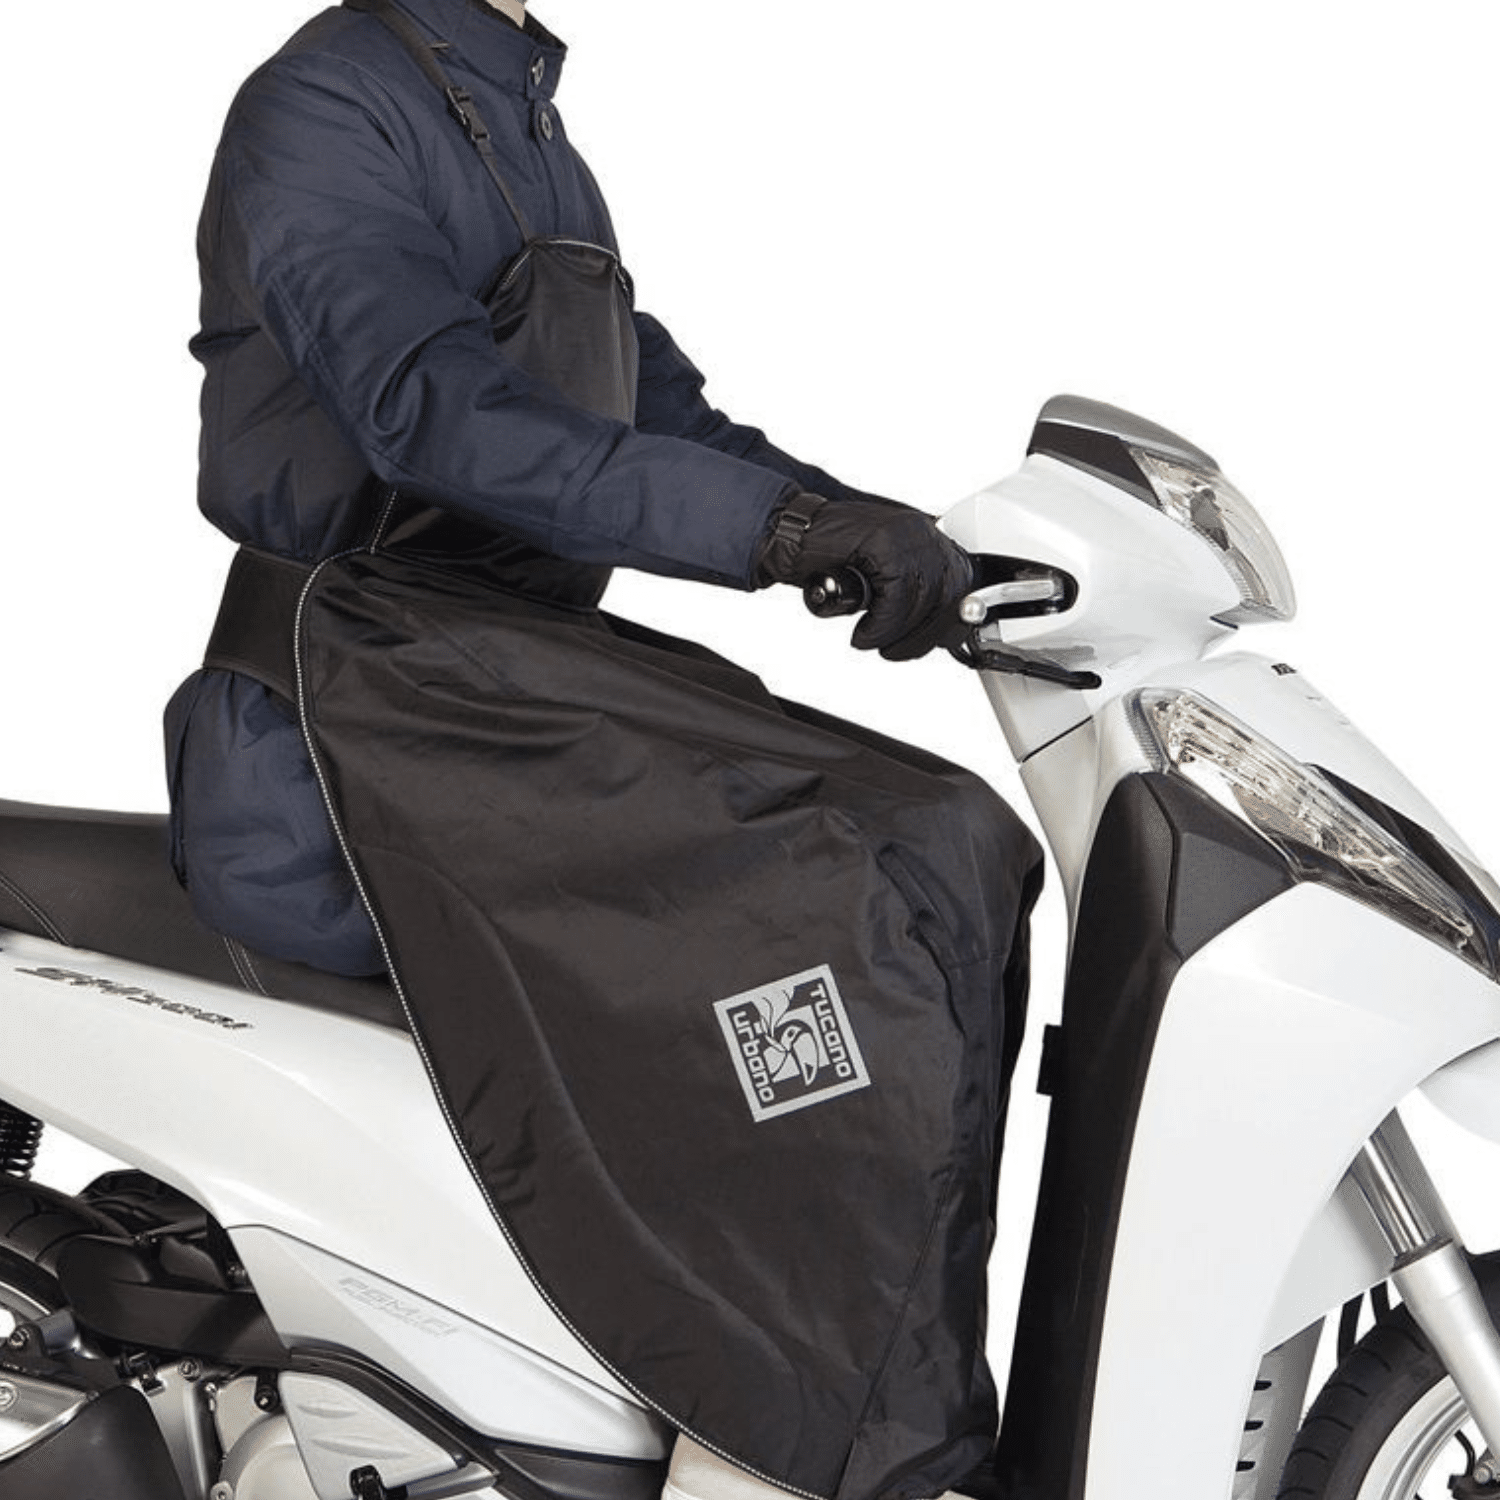 Comment bien choisir son tablier pour scooter et moto